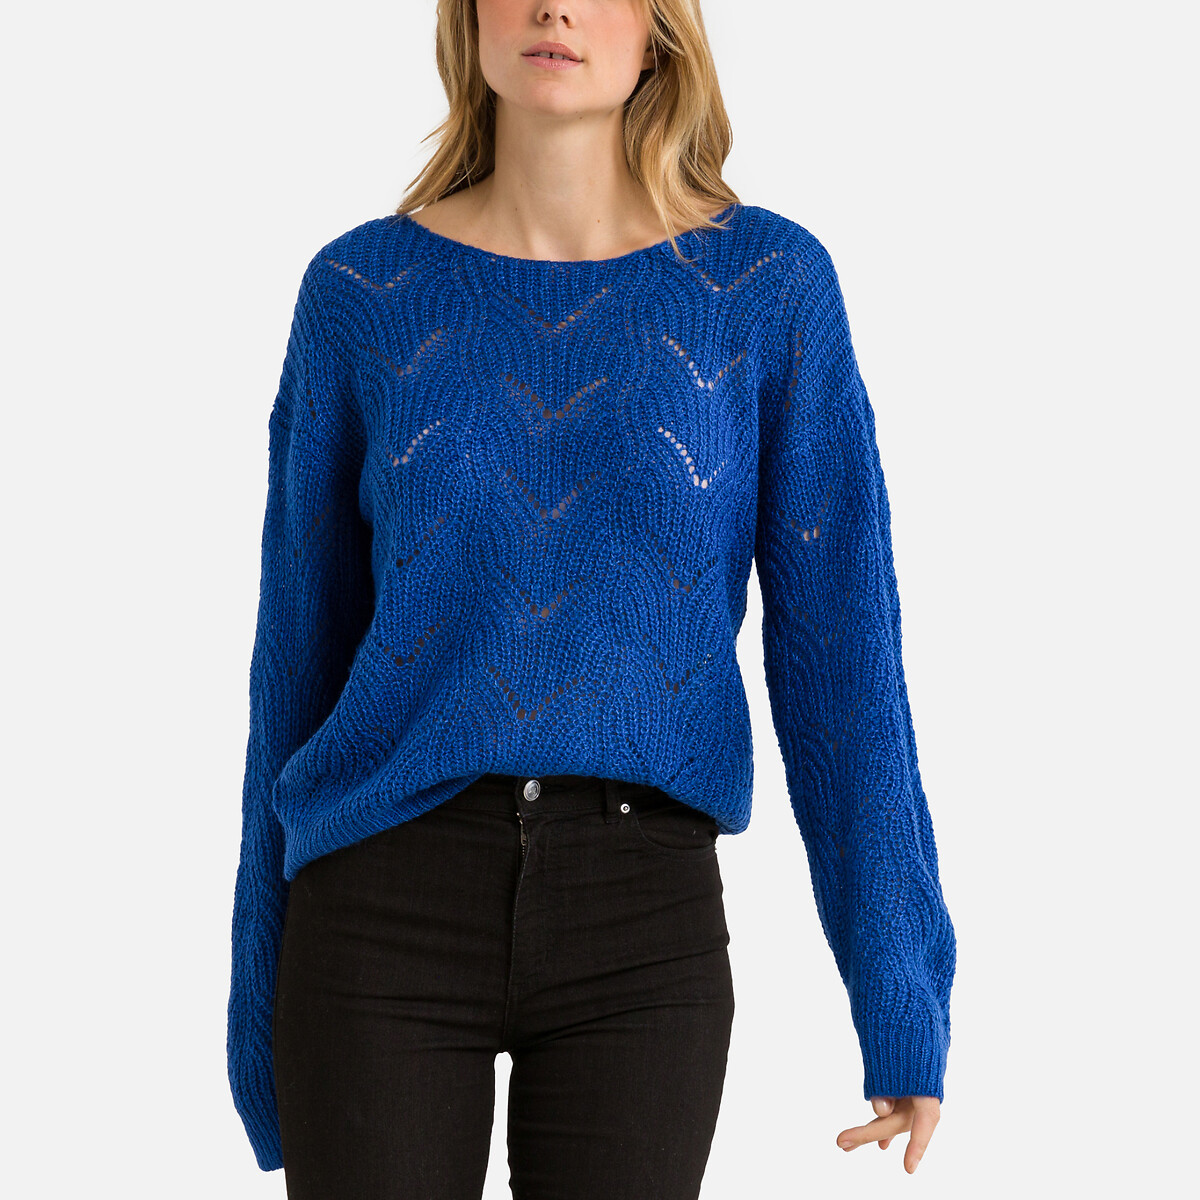 Пуловер с круглым вырезом из ажурного трикотажа M синий